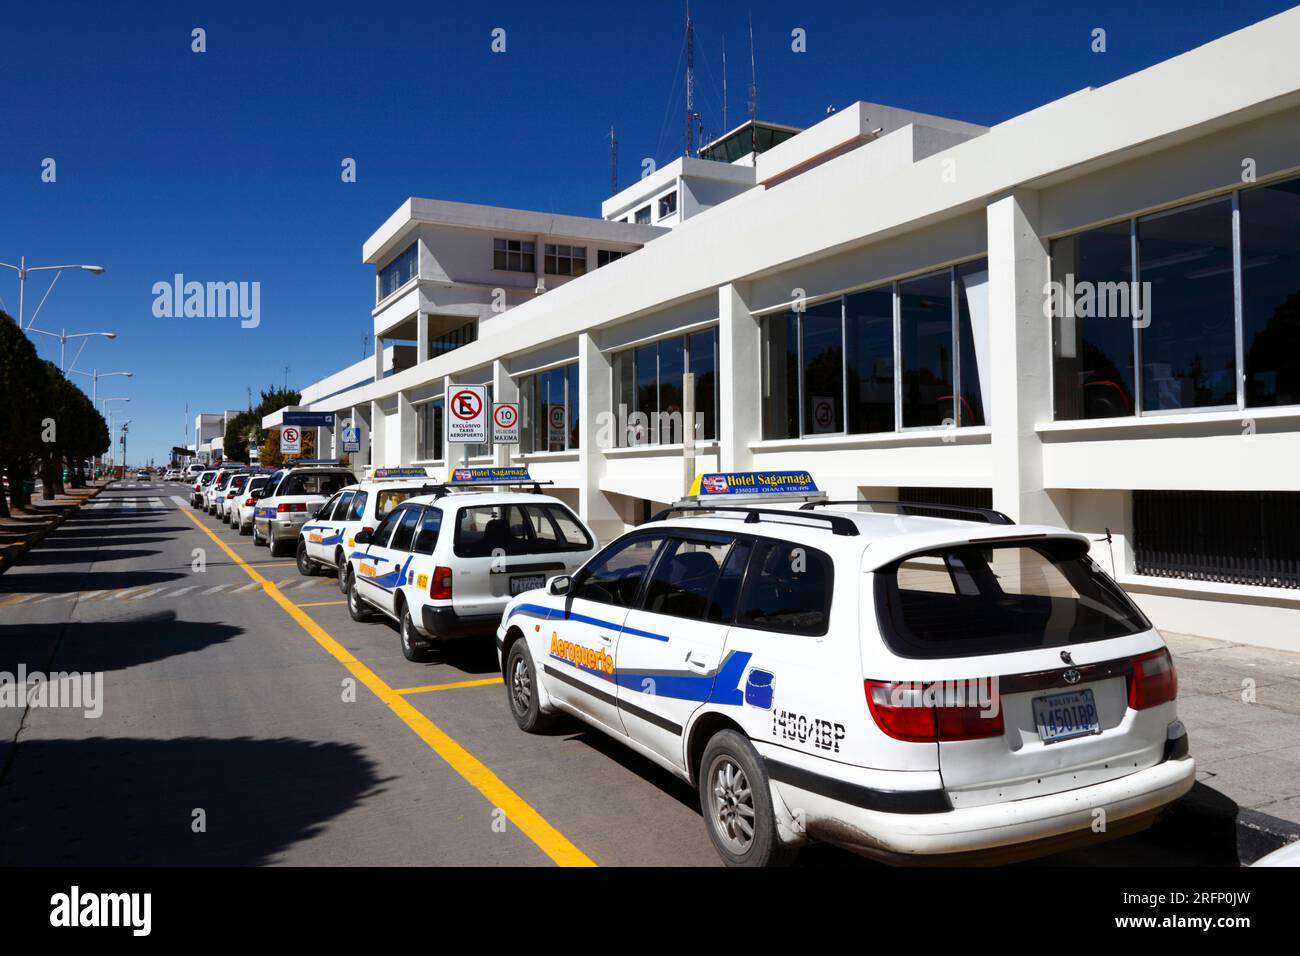 Offizielle Flughafentransfer Taxis parken vor dem Flughafen La Paz/El Alto (LPB, mit 4050m km der höchste internationale Flughafen der Welt), Bolivien Stockfoto